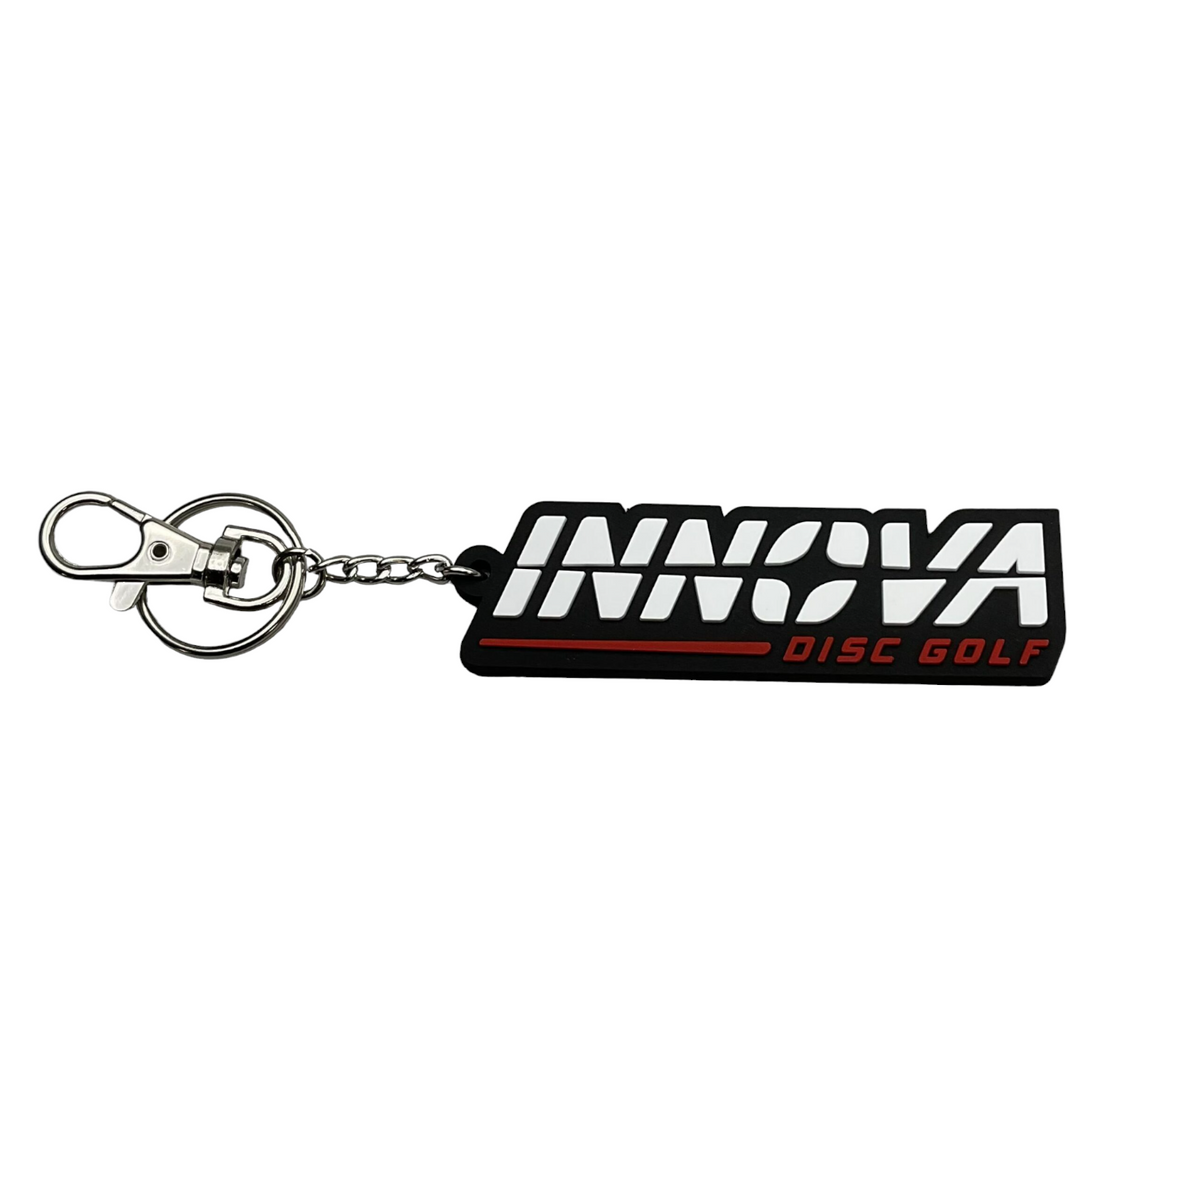 Innova Burst Logo Key Chain